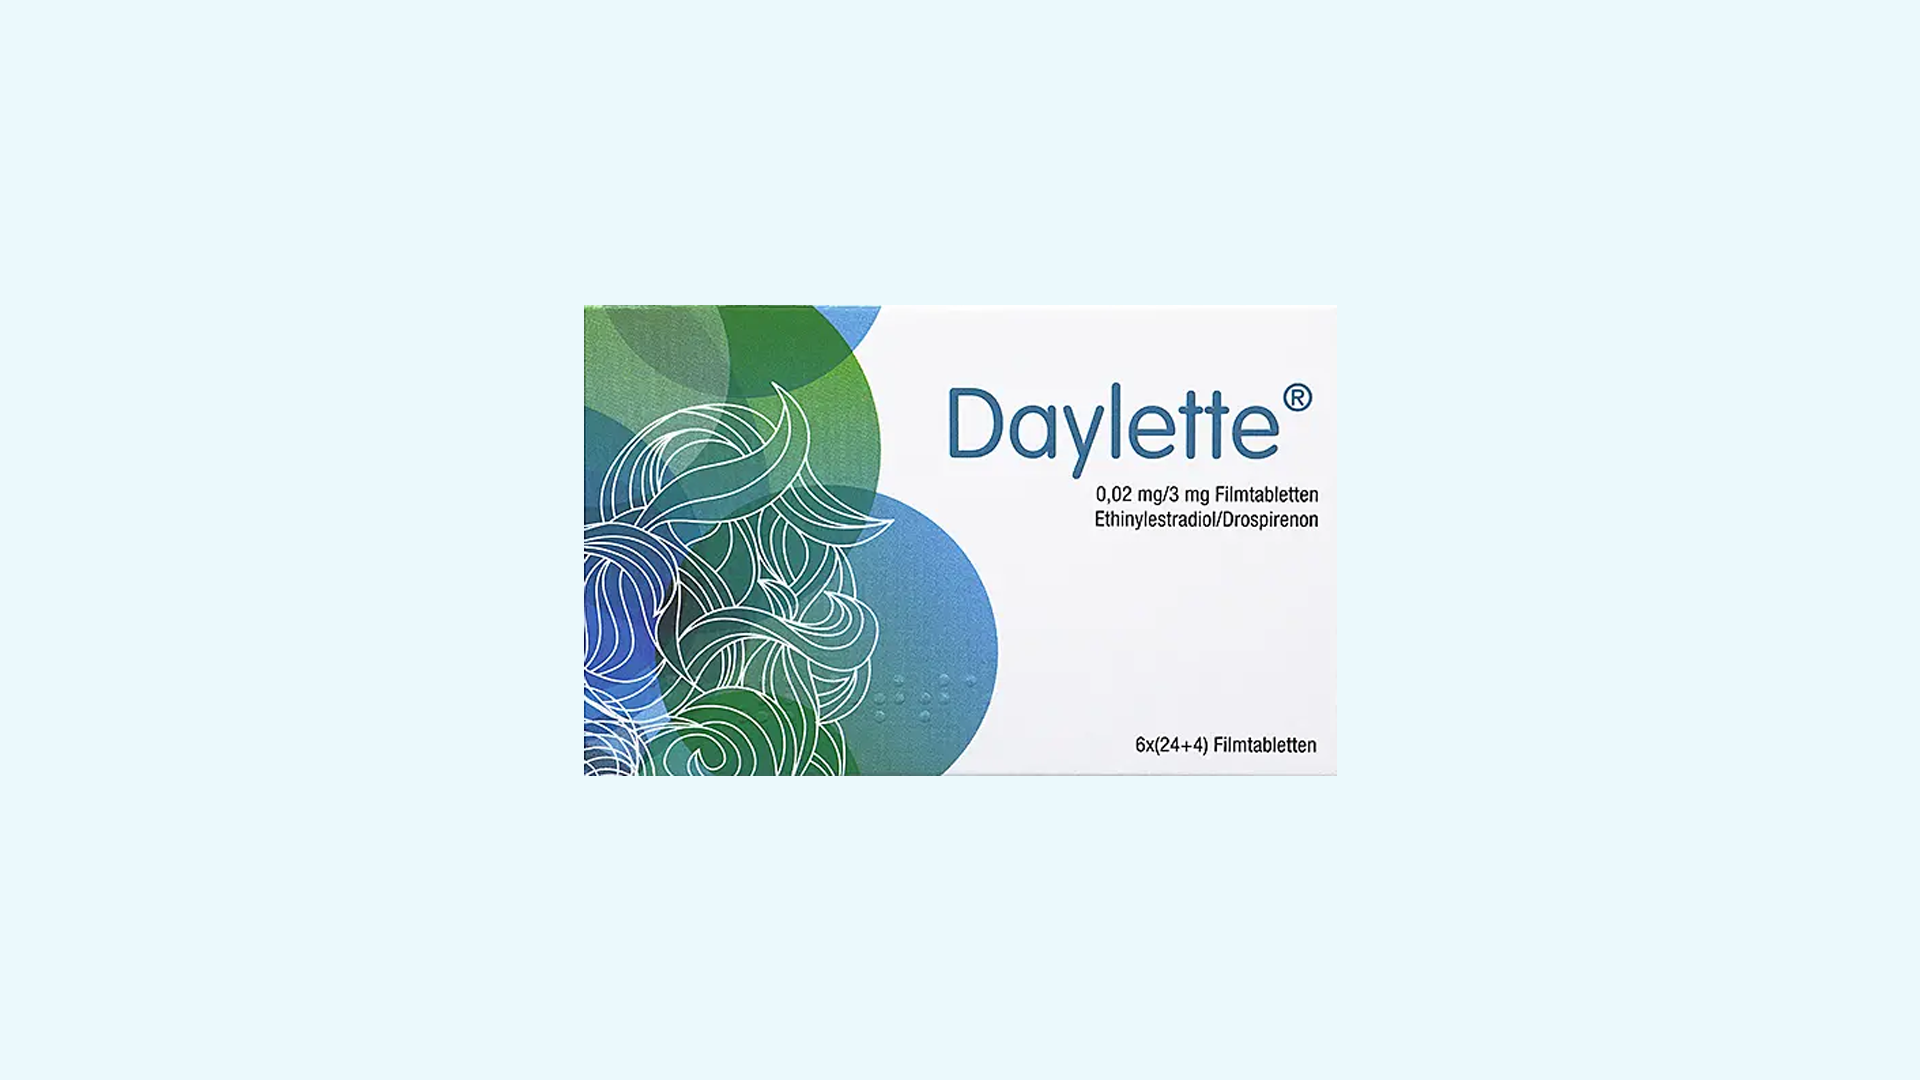 Daylette – informacje o leku, dawkowanie oraz przeciwwskazania